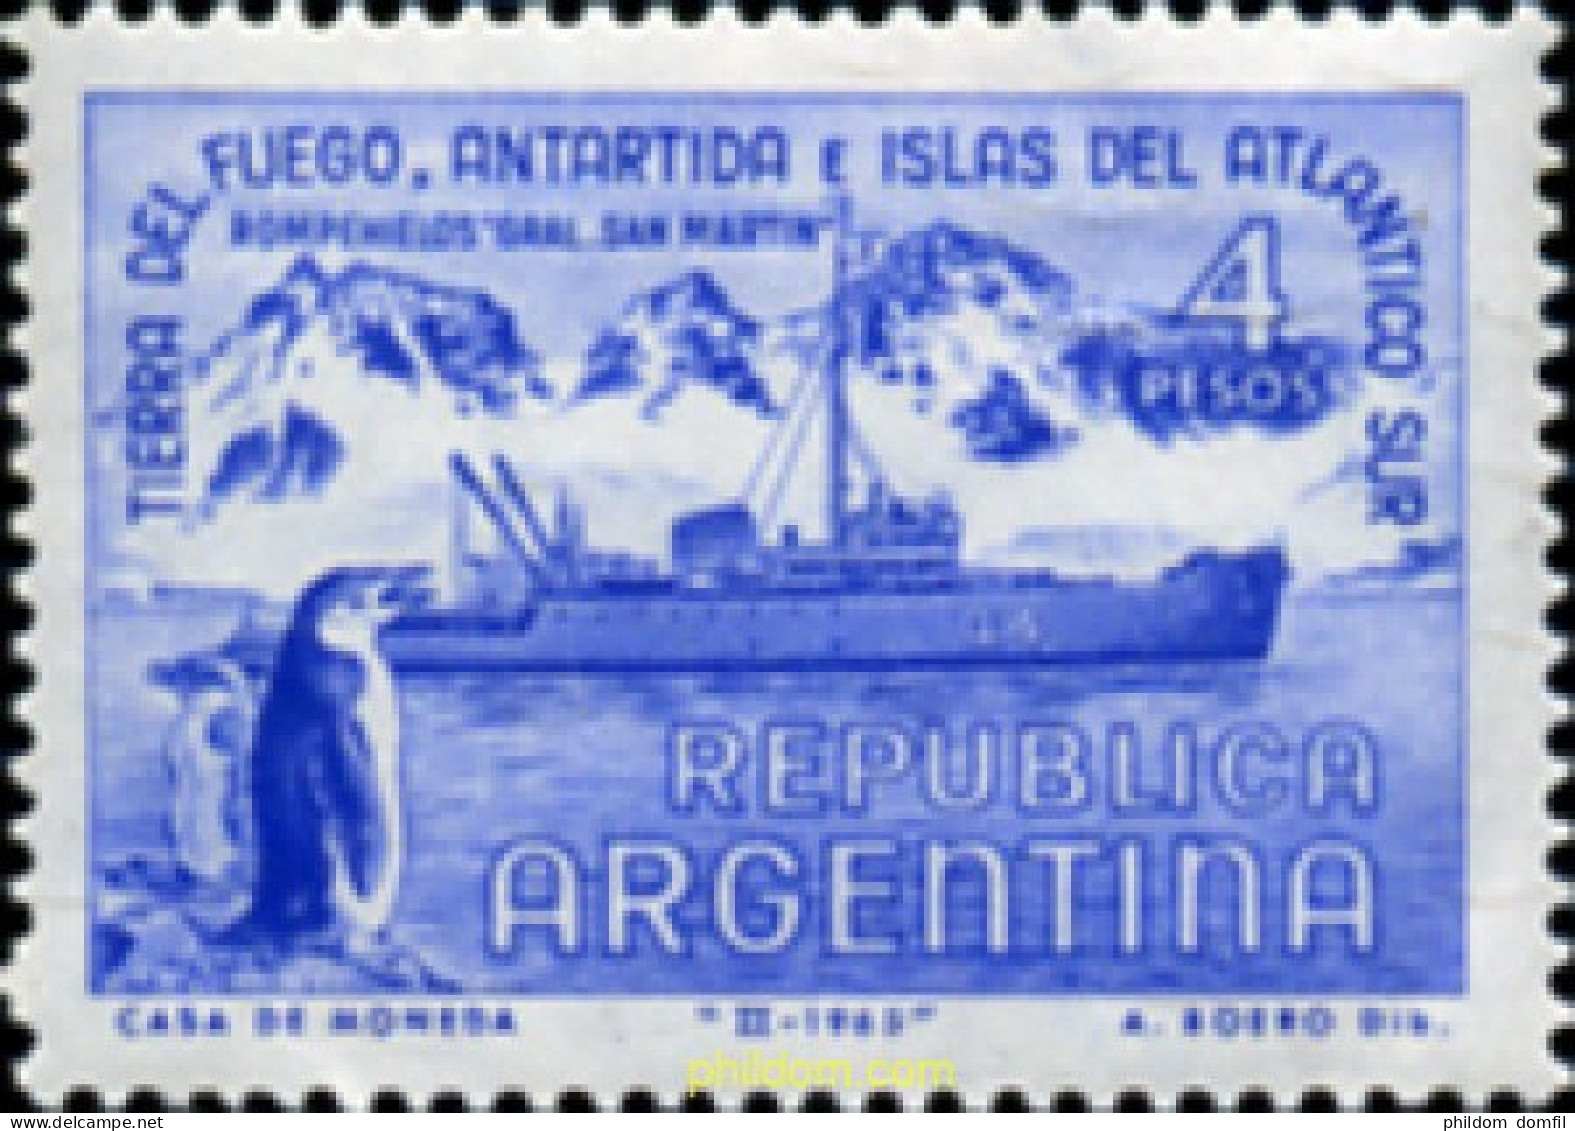 727020 HINGED ARGENTINA 1965 TERRITORIOS ANTARTICOS ARGENTINOS - Ungebraucht